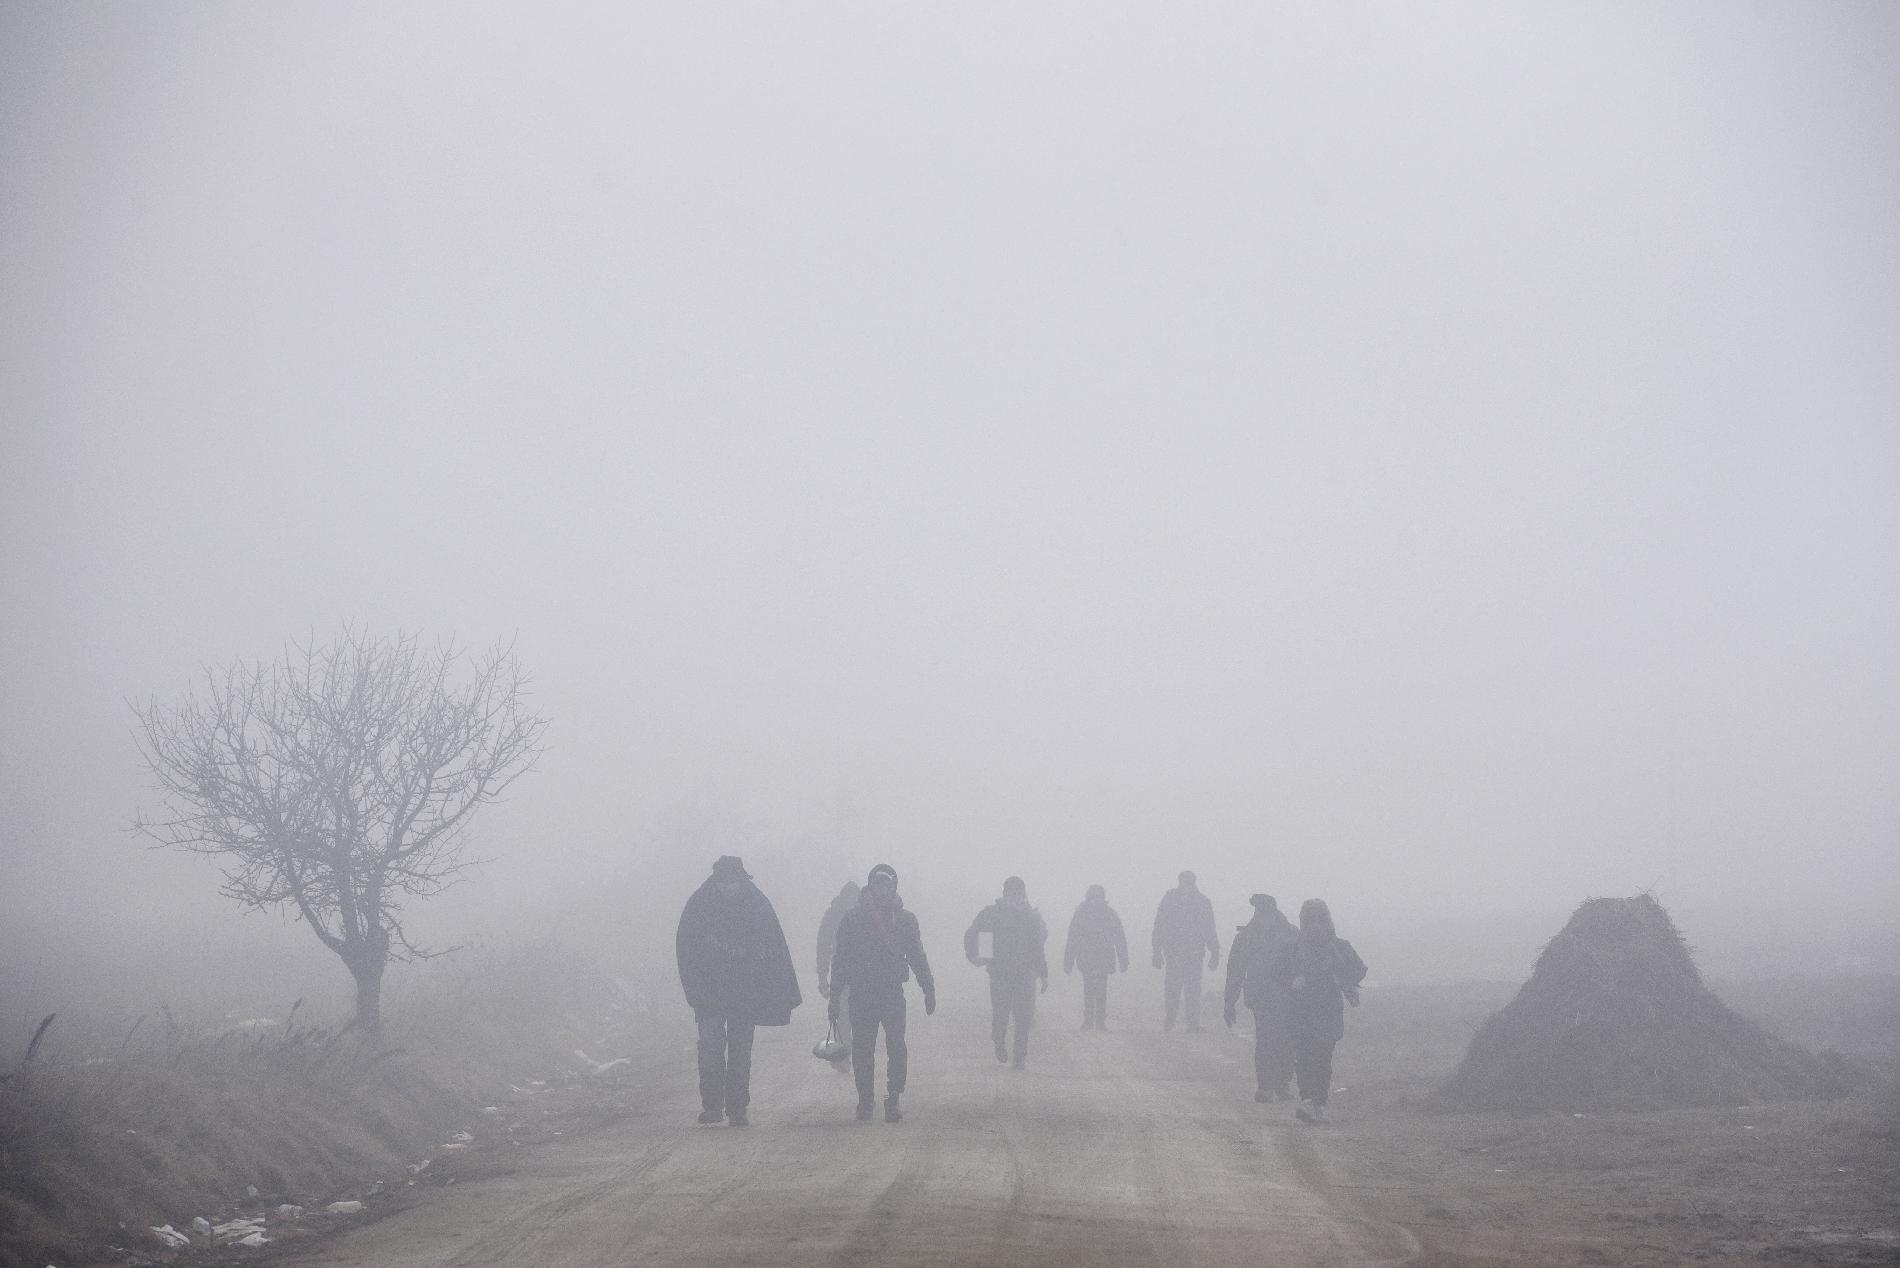 Száznál több határsértőt tartóztattak föl szerdára virradóra Csongrád megyében